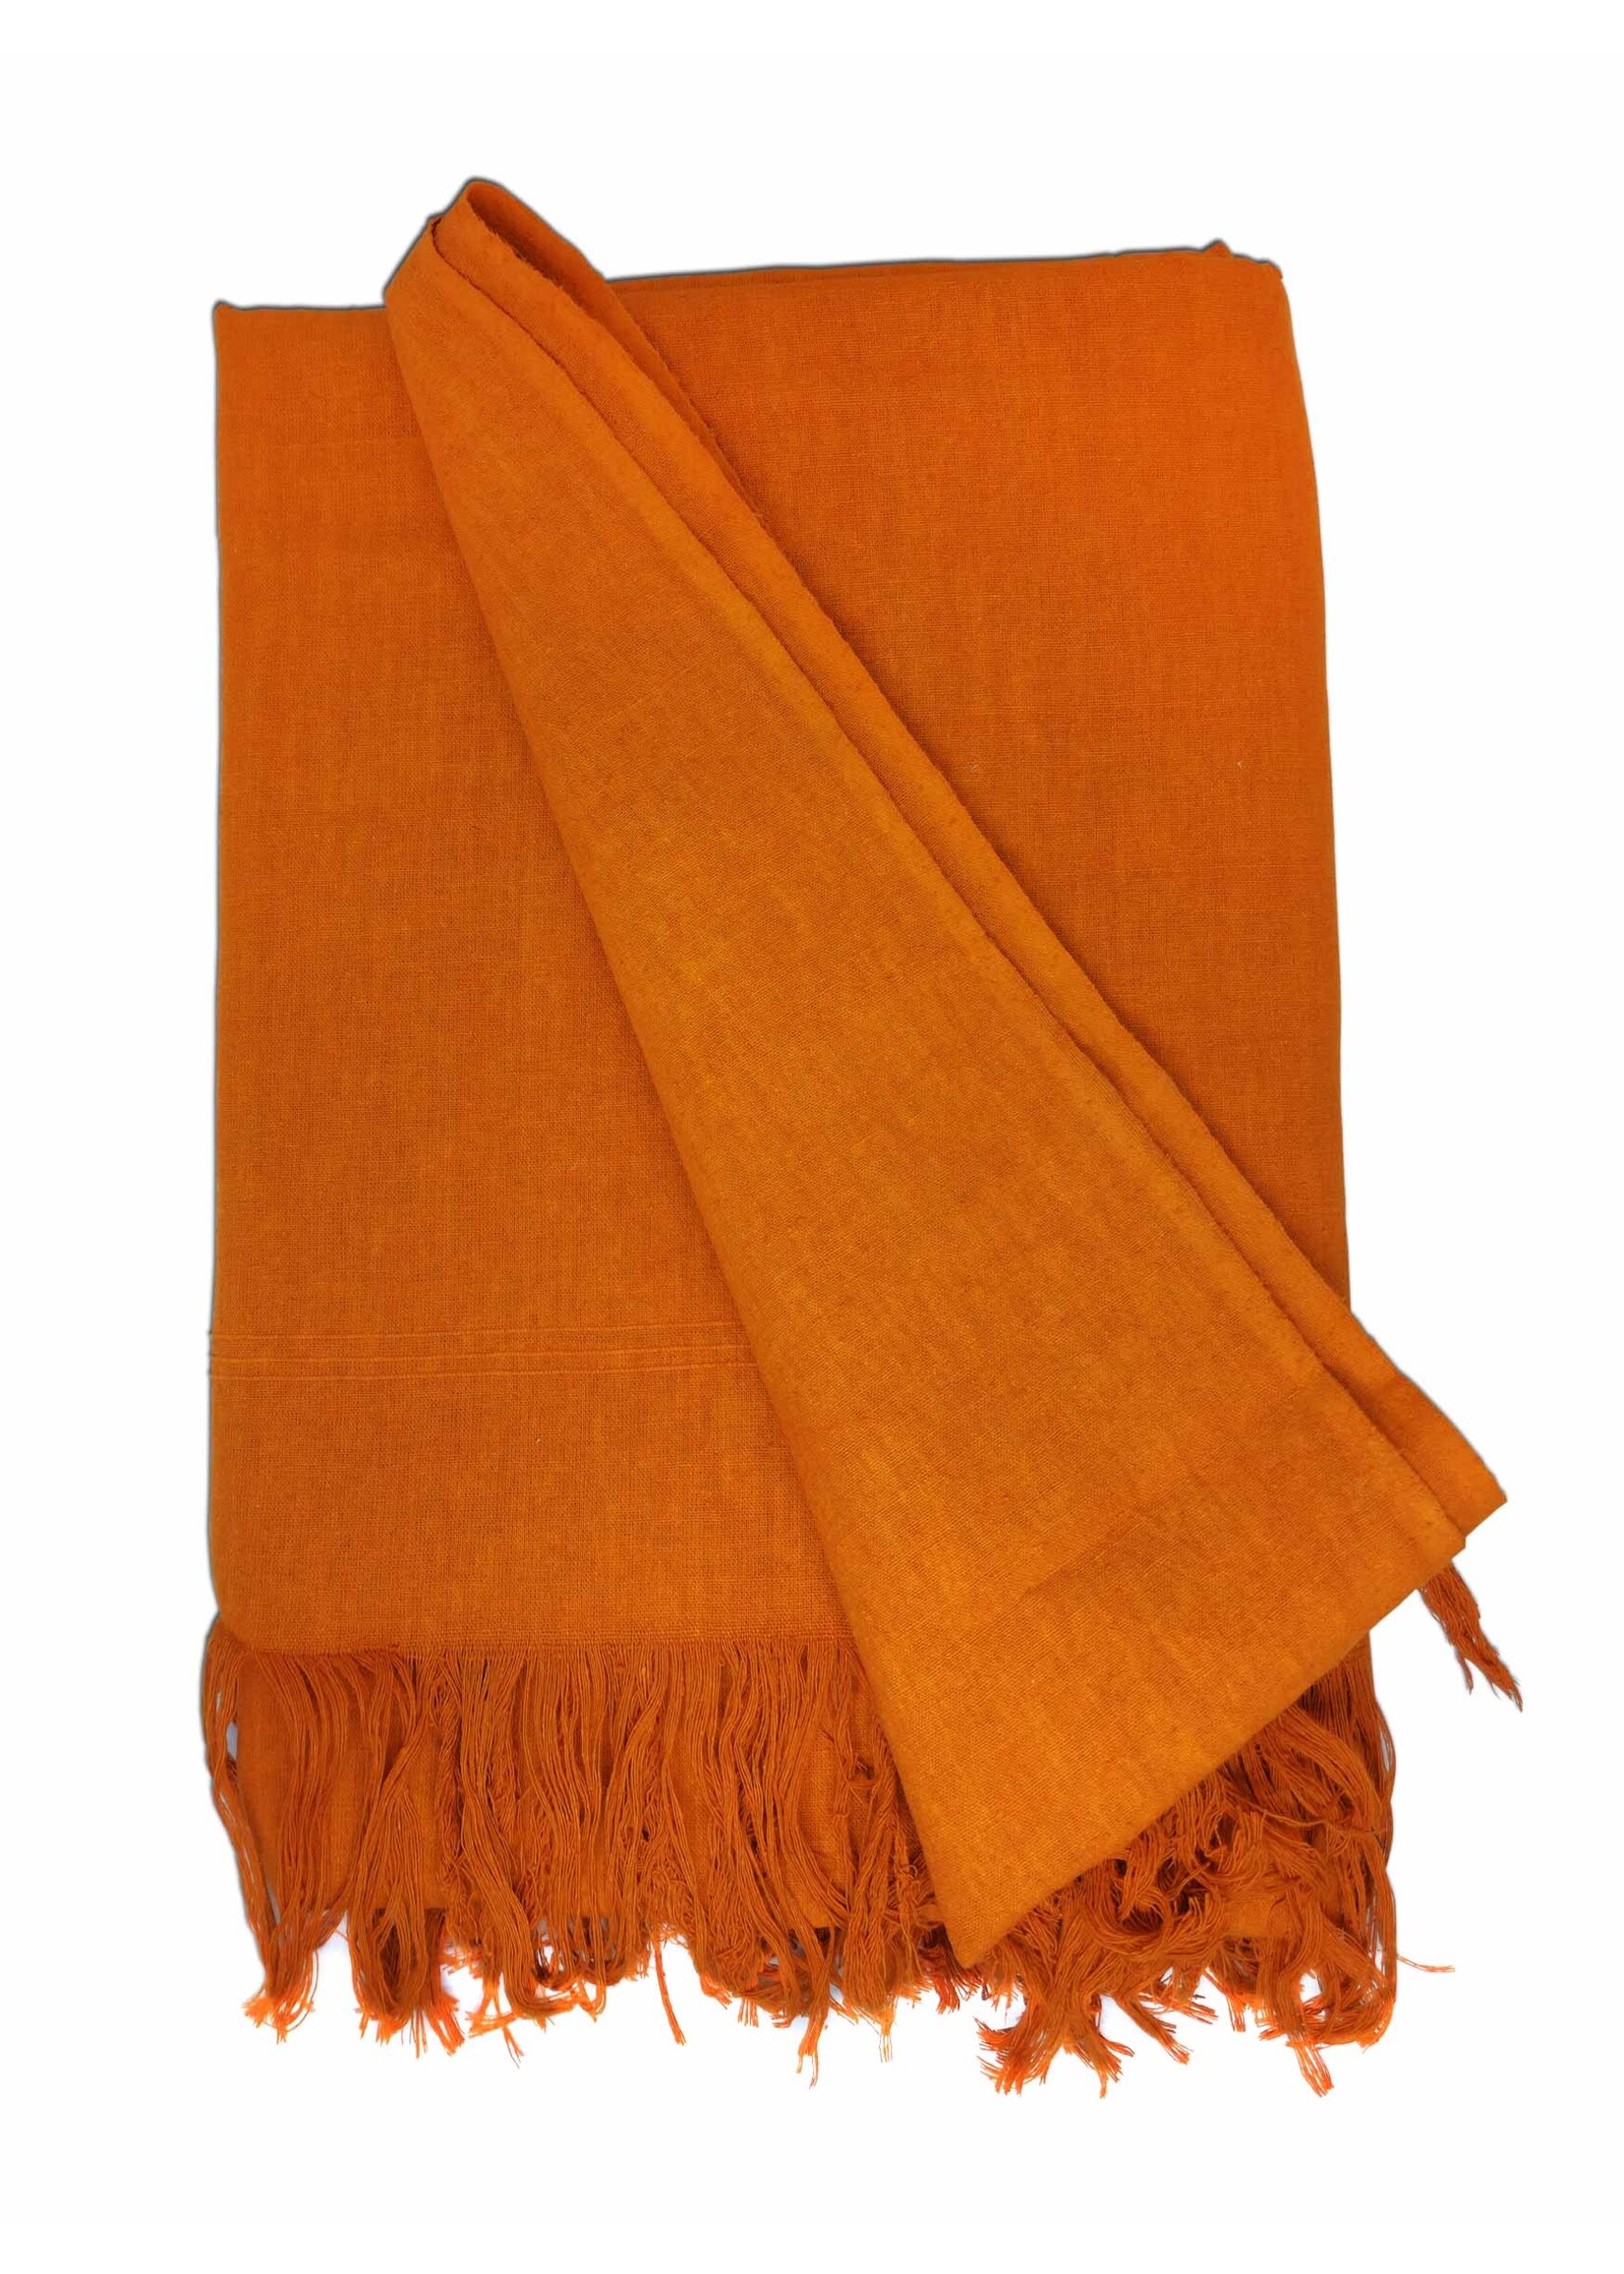 Tibetischer Schal aus Rohseide, 250 x 120 cm